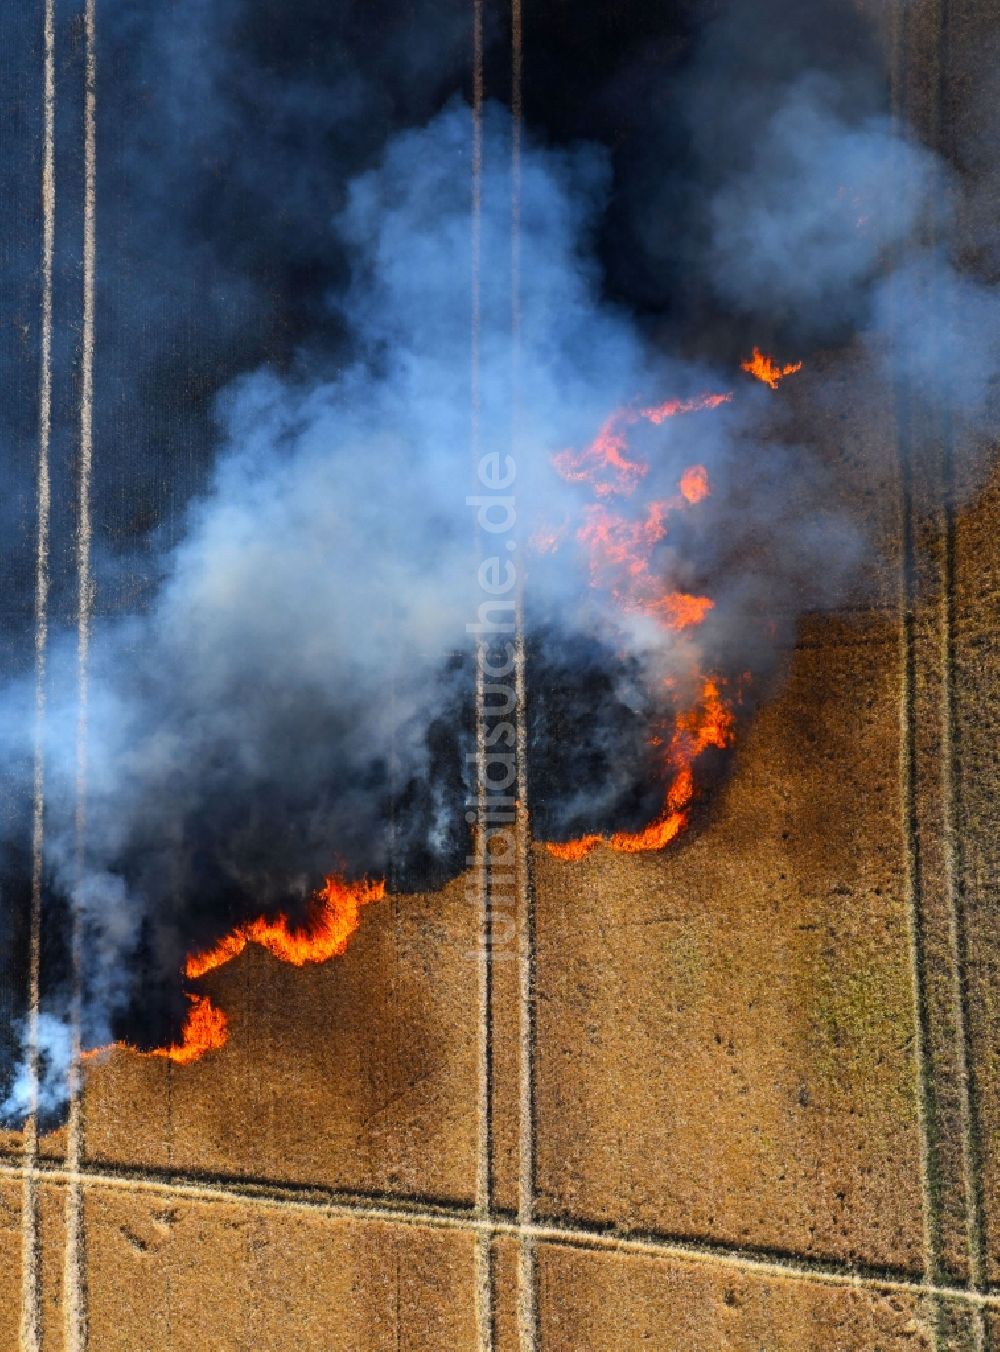 Angersdorf von oben - Rauchschwaden eines Brandes in einem Getreidefeld in Angersdorf im Bundesland Sachsen-Anhalt, Deutschland